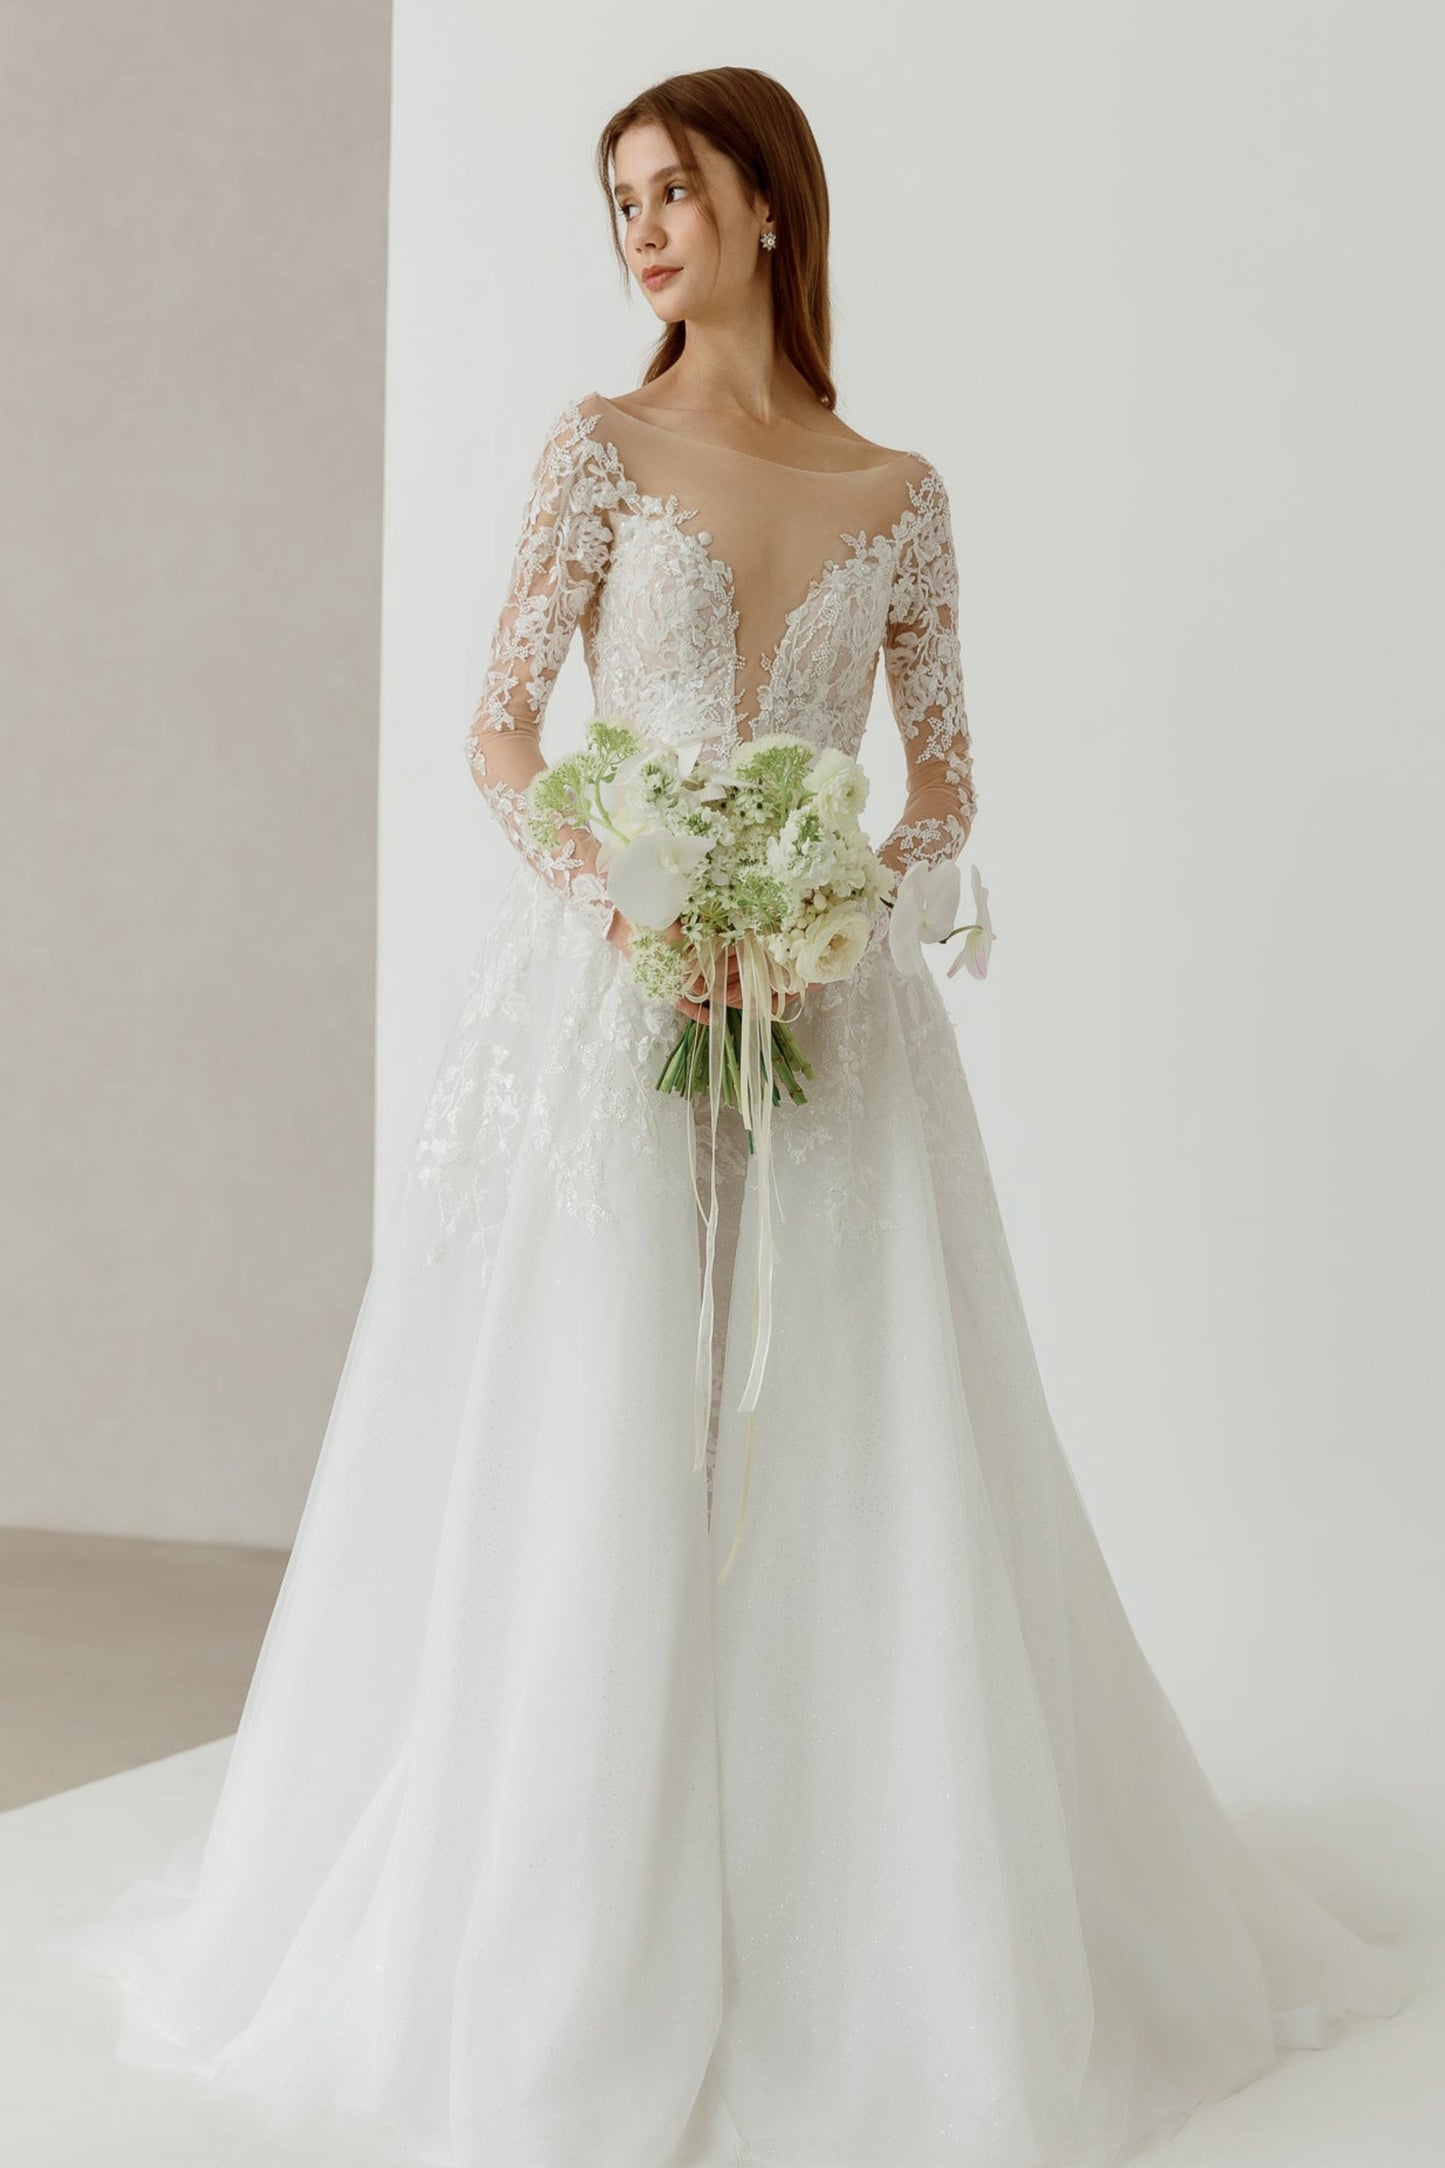 Brautkleid mit tiefem V-Ausschnitt, Spitze und Meerjungfrauenrock V deep neckline wedding dress with lace and mermaid skirt